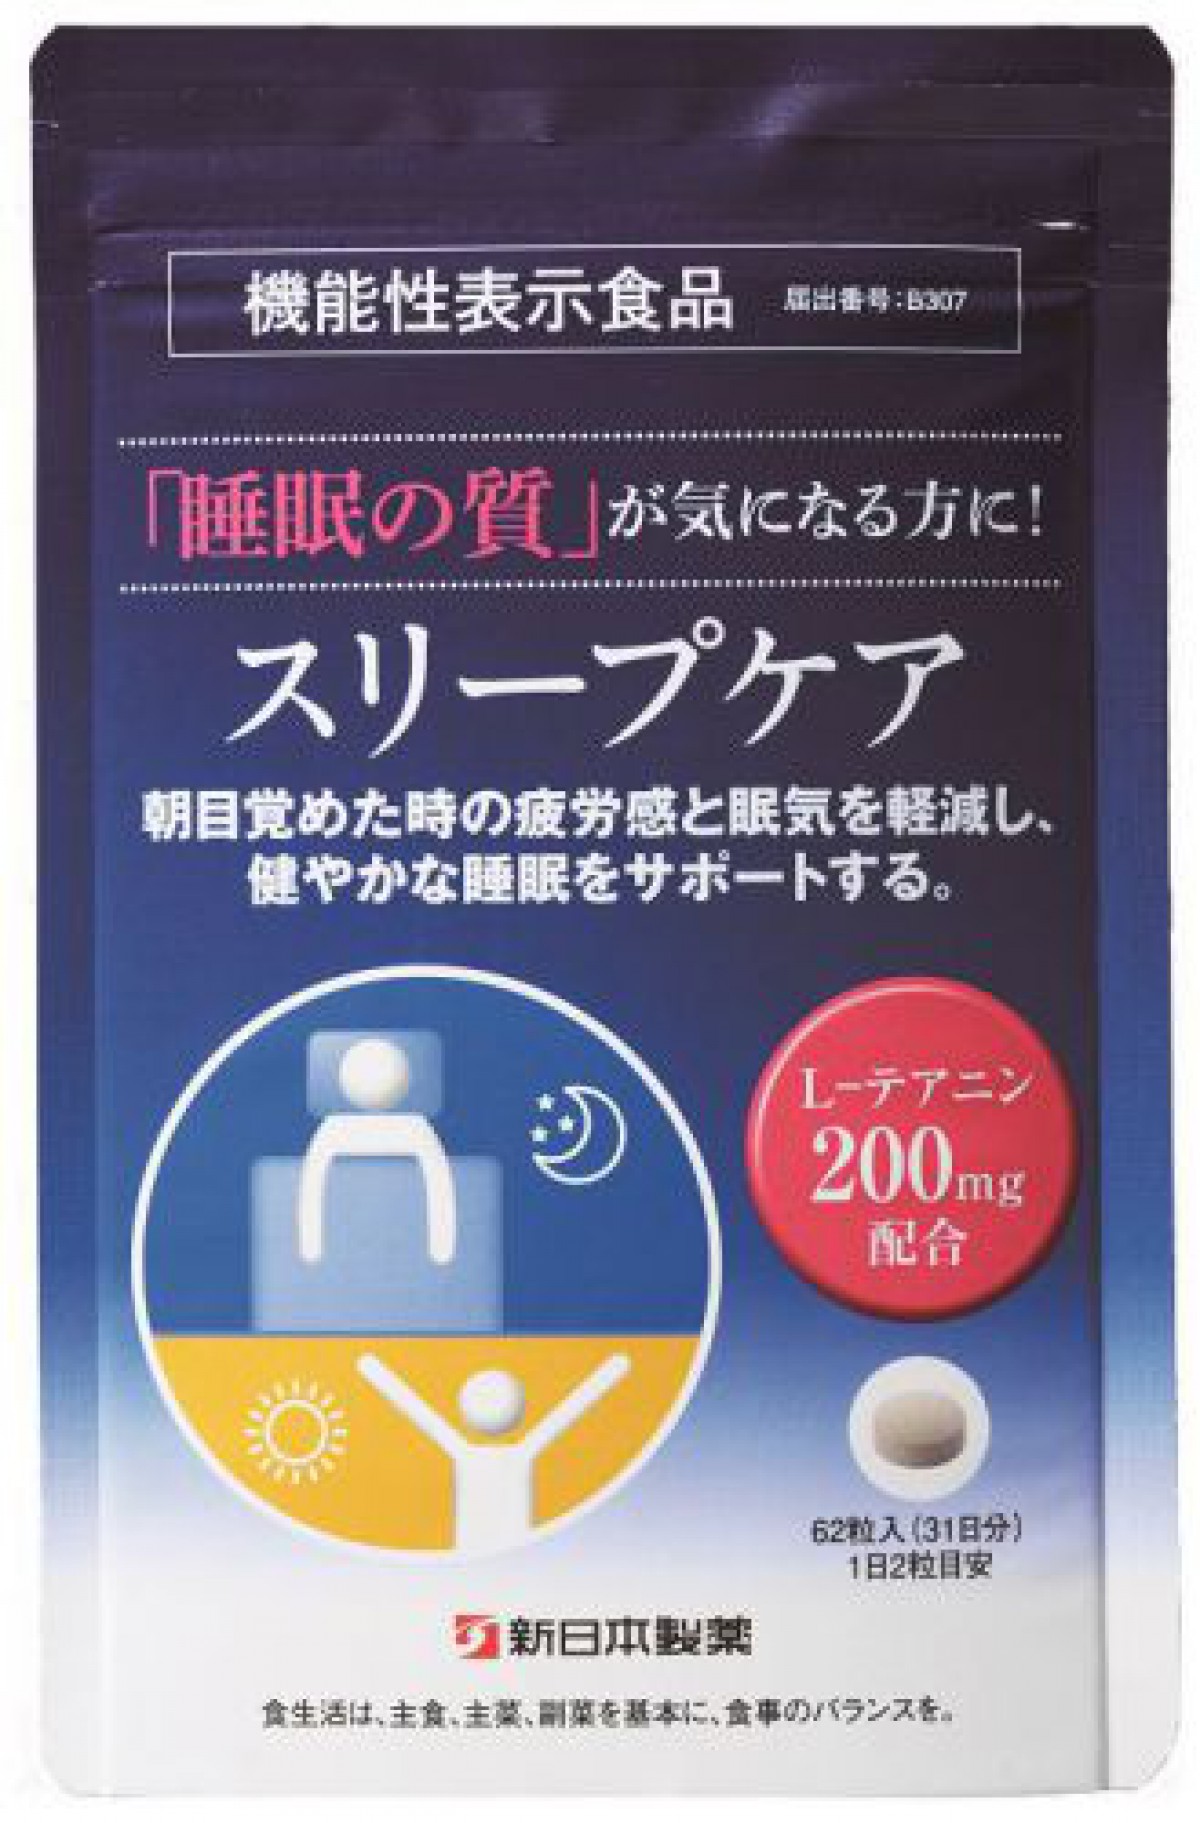 機能性表示食品「スリープケア」を発売/新日本製薬